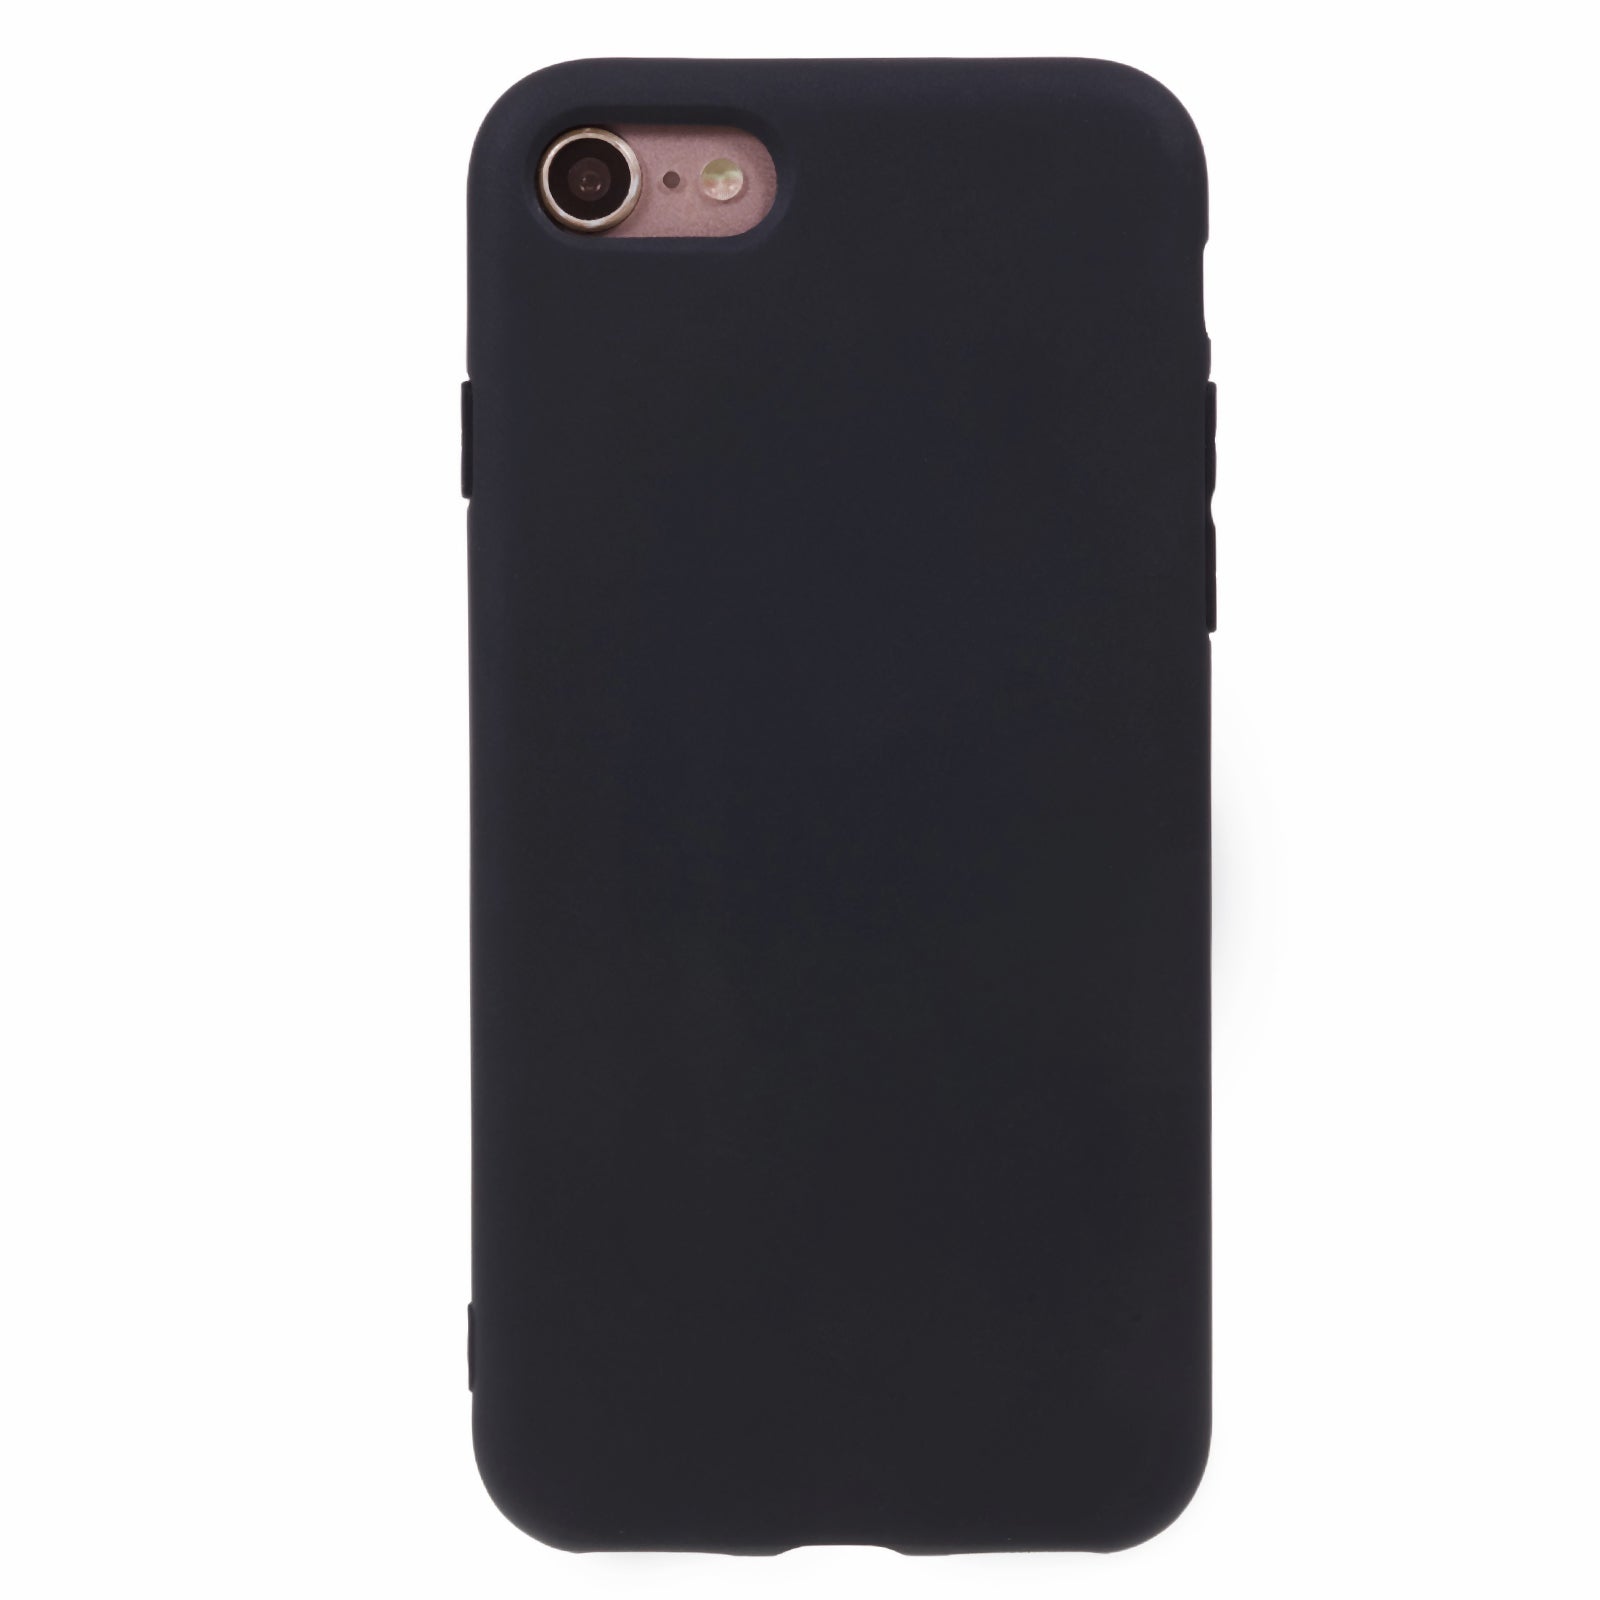 Uniqkart for iPhone 7 / 8 / SE (2020) / SE (2022) Candy Color Matte Phone Case Anti-scratch TPU Cover - Black